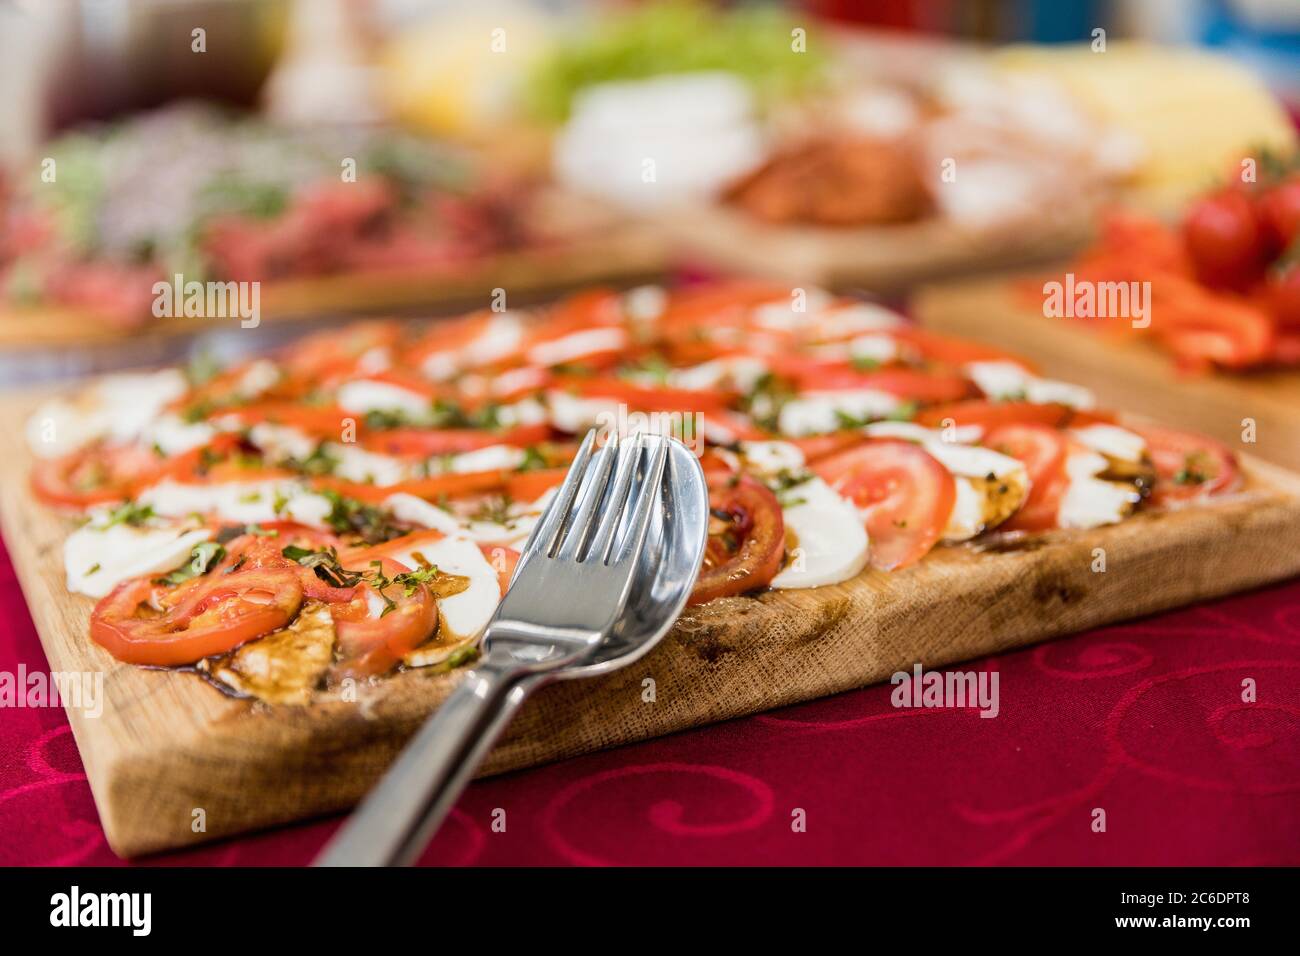 Frische Mozzarella und Salat auf einem Holztablett. Nahaufnahme auf einem Löffel und einer Gabel. Stockfoto